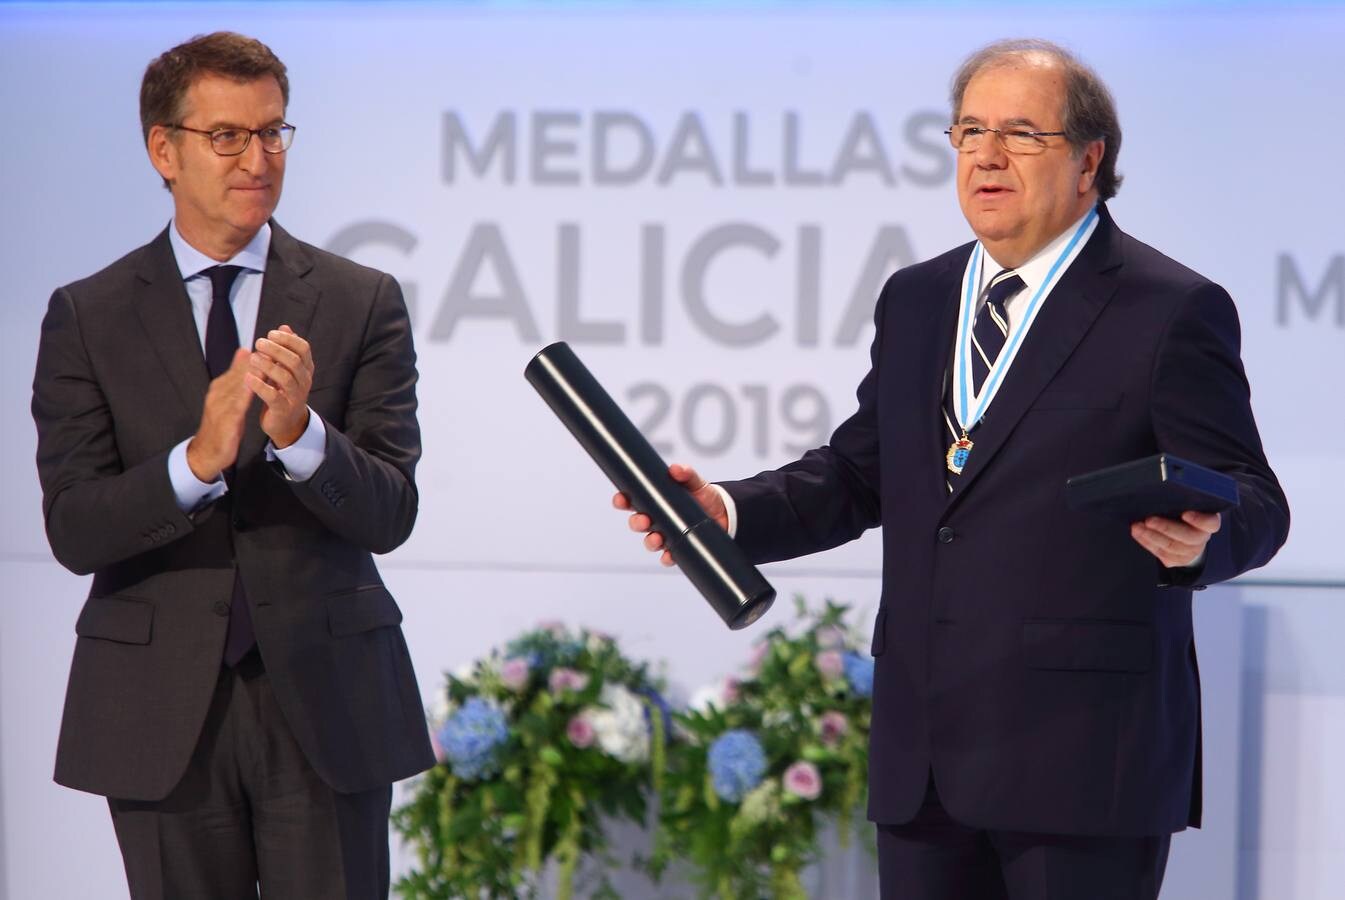 El expresidente de la Junta de Castilla y León, Juan Vicente Herrera (d), recibe la Medalla de Oro de Galicia de manos del presidente de la Xunta de Galicia, Alberto Núñez Feijoo (i).